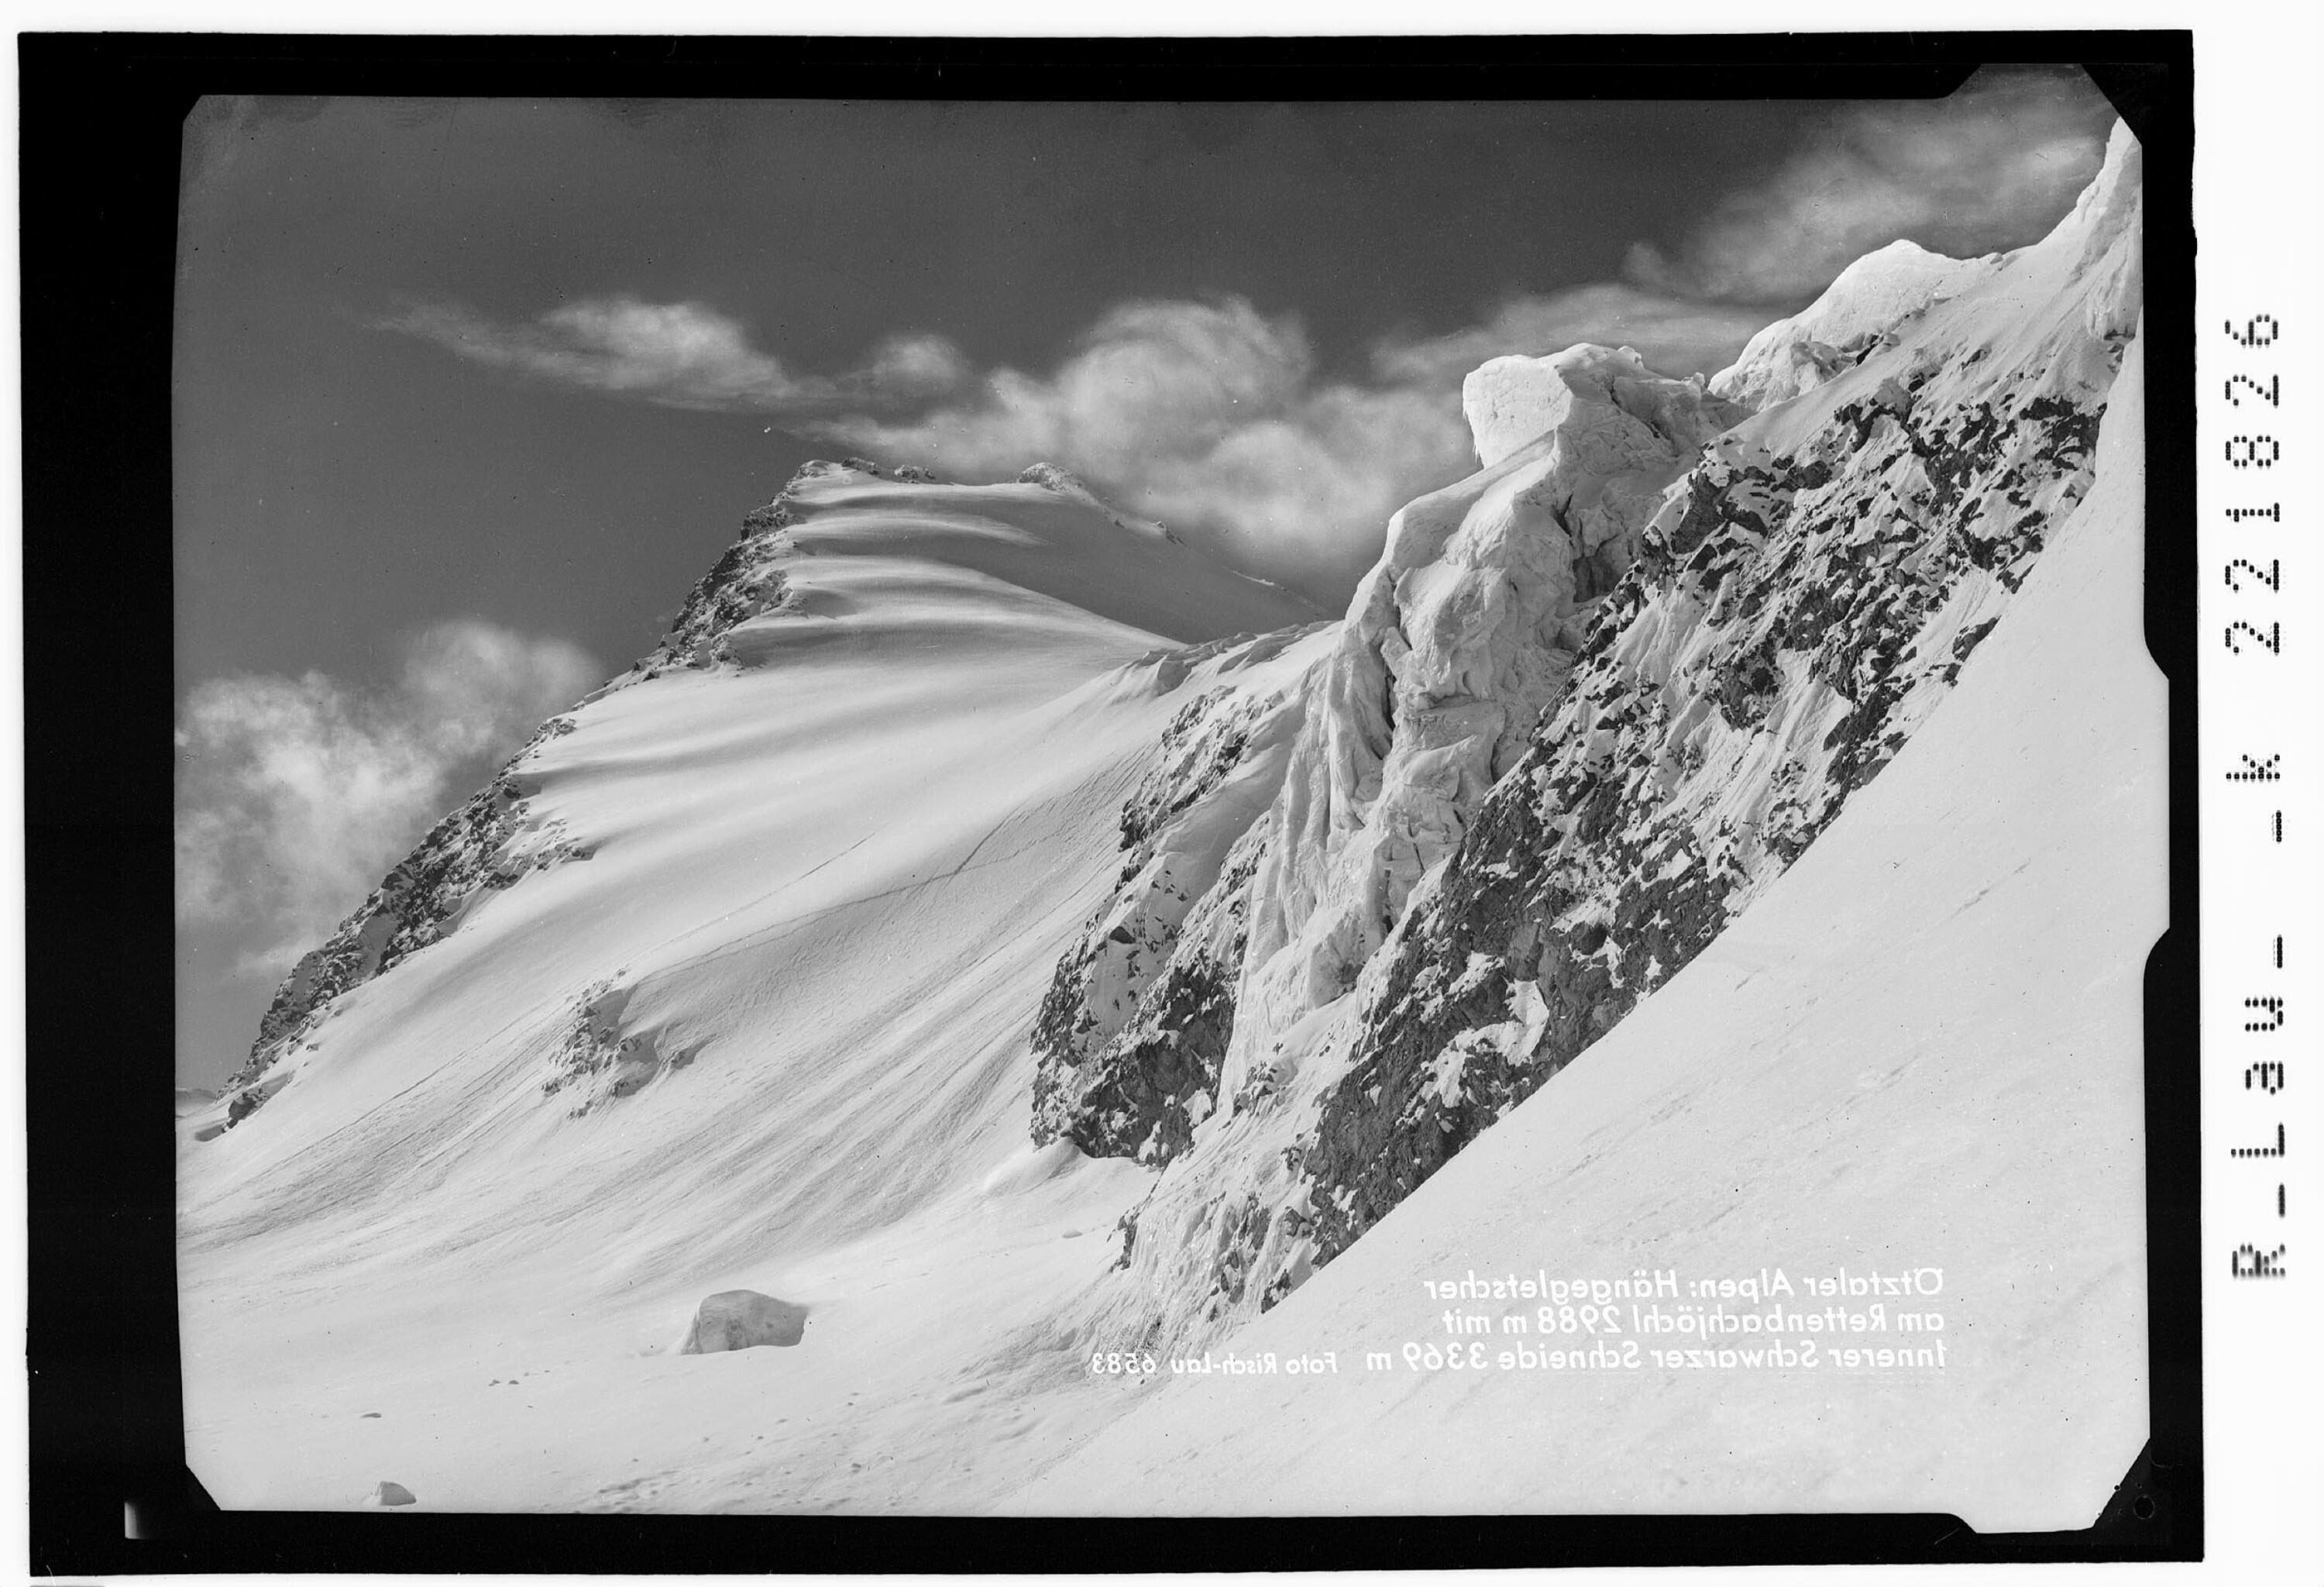 Ötztaler Alpen / Hängegletscher am Rettenbachjöchl 2988 m mit Innerer Schwarzen Schneid 3369 m></div>


    <hr>
    <div class=